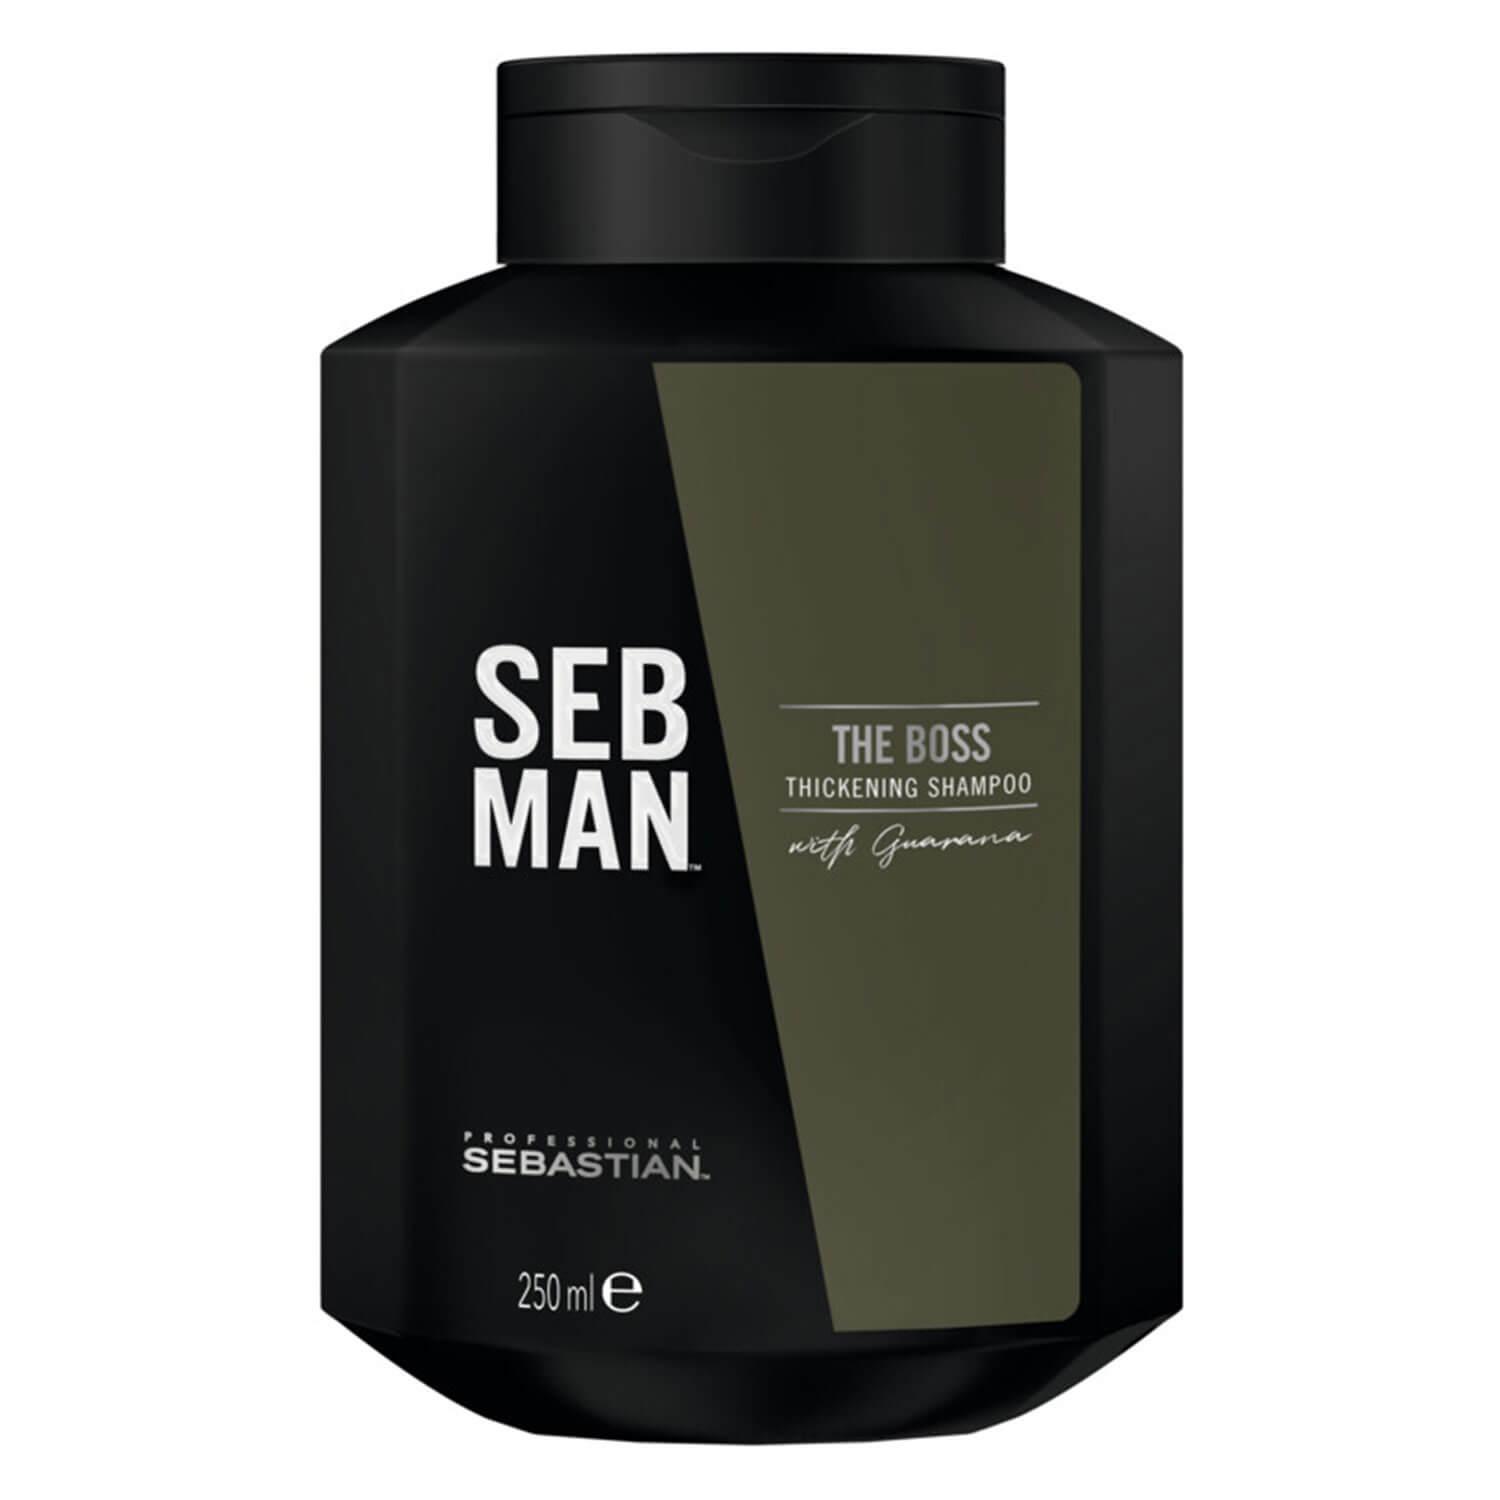 SEB MAN - The Boss Thickening Shampoo